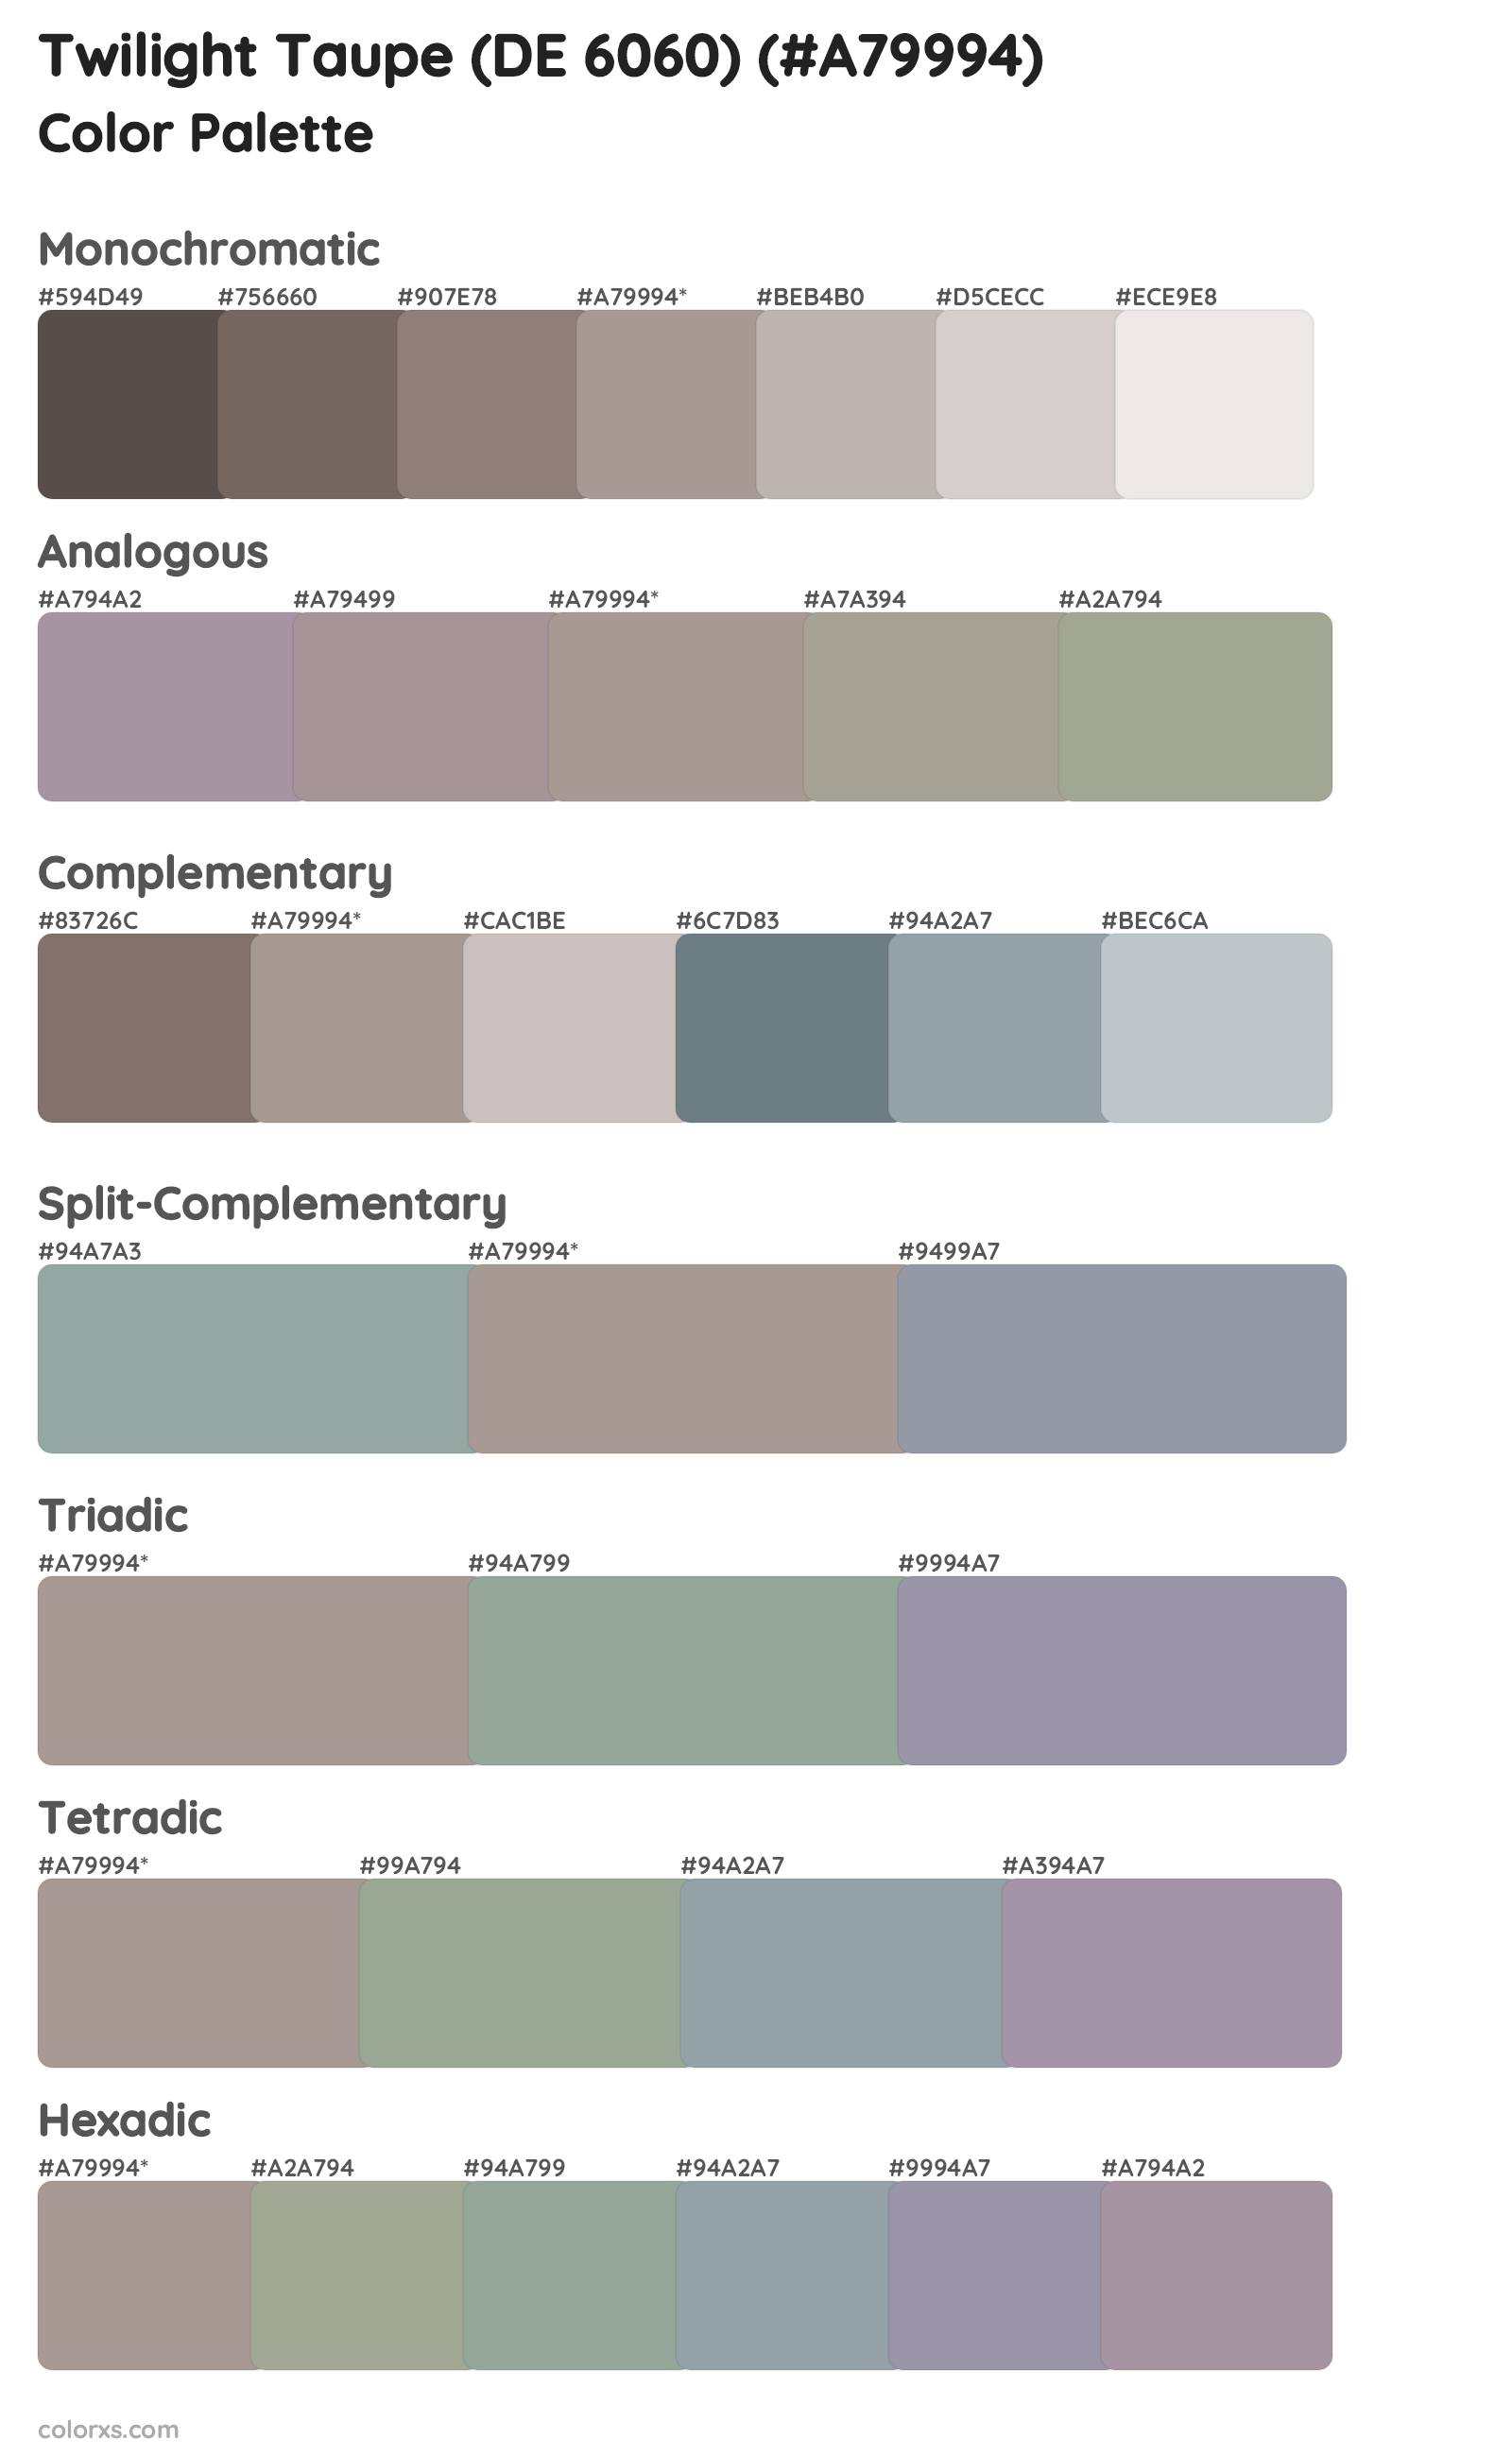 Twilight Taupe (DE 6060) Color Scheme Palettes